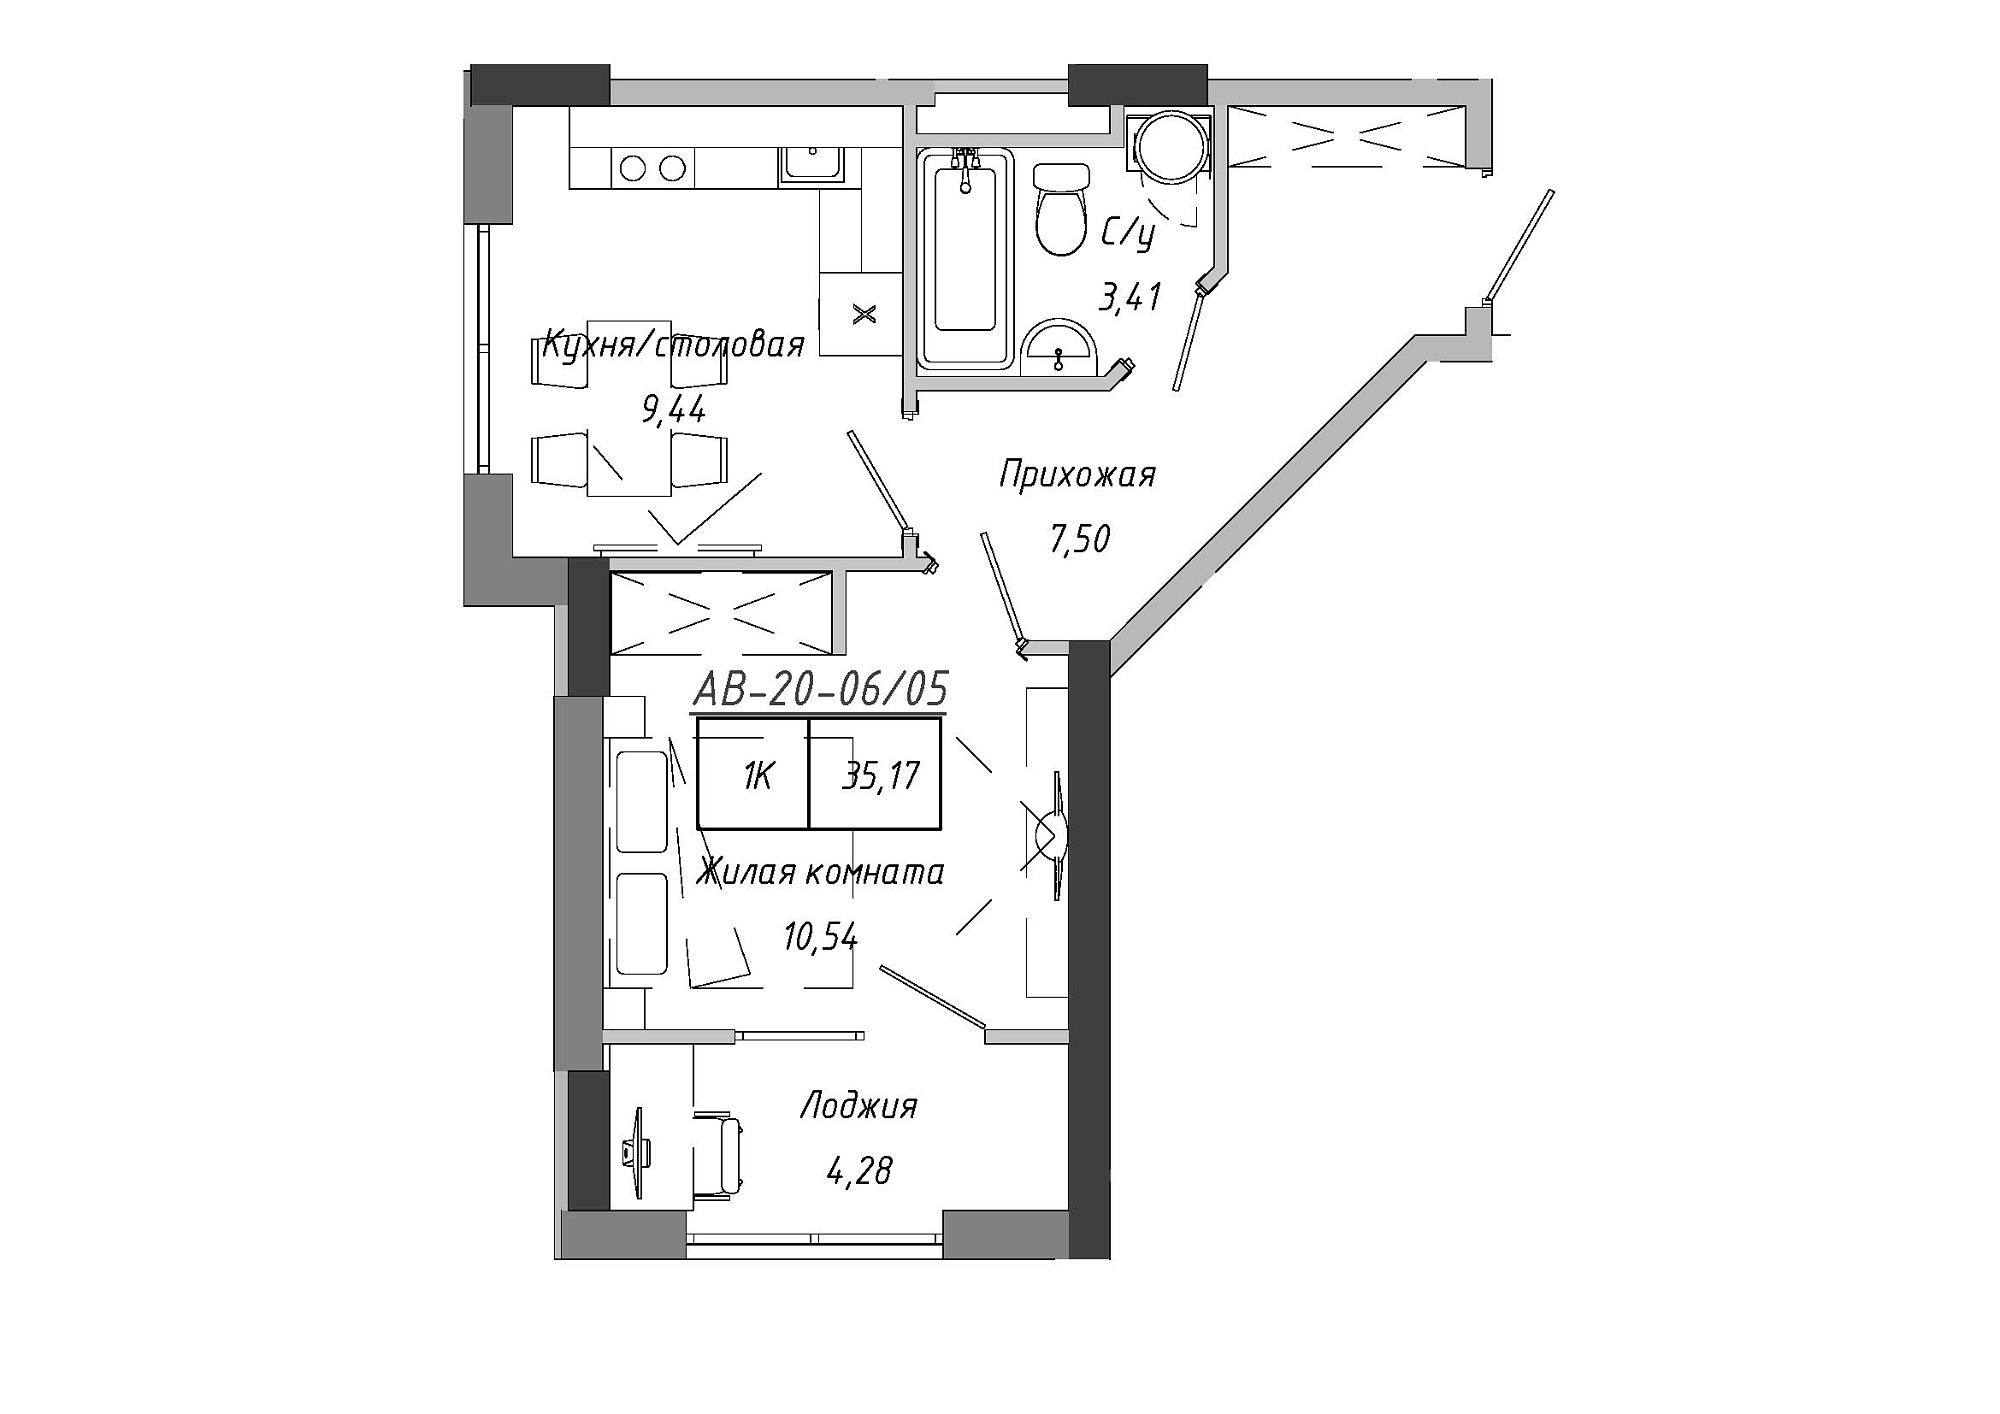 Планировка 1-к квартира площей 33.55м2, AB-20-06/00005.